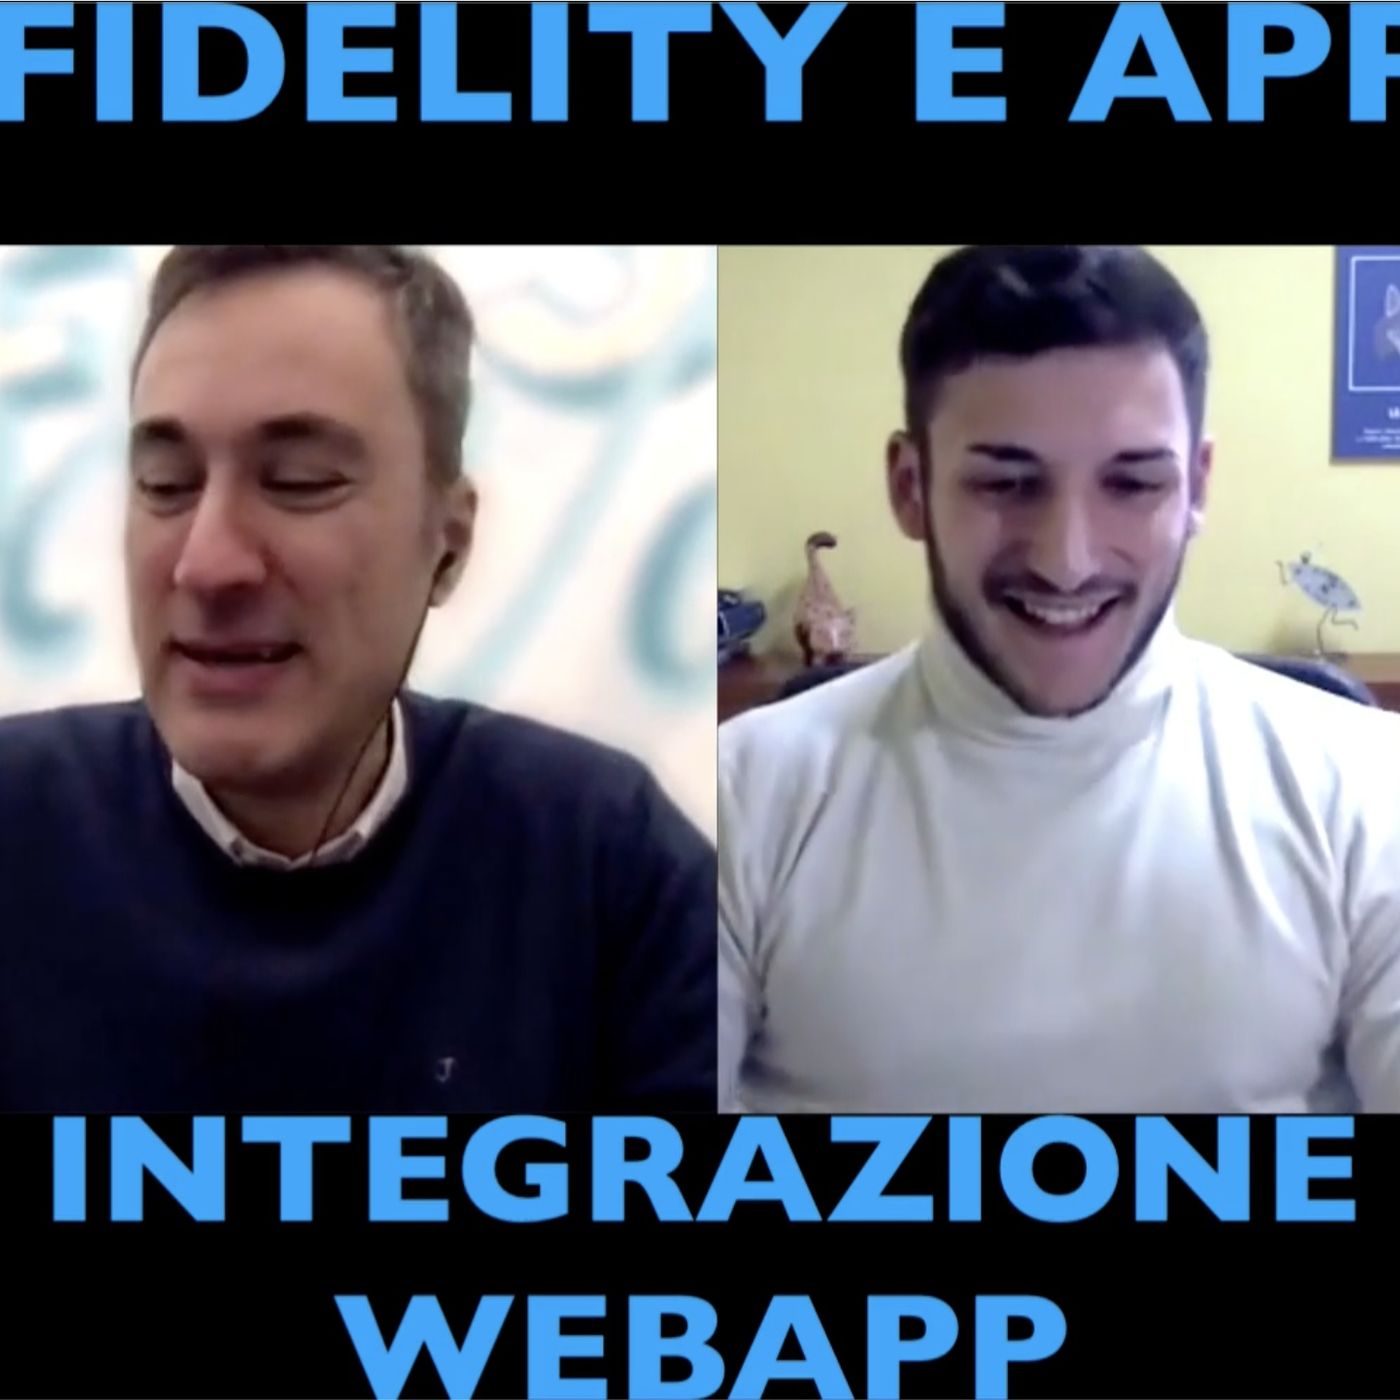 Fidelity e App - Intervista a Webapp di Napoli